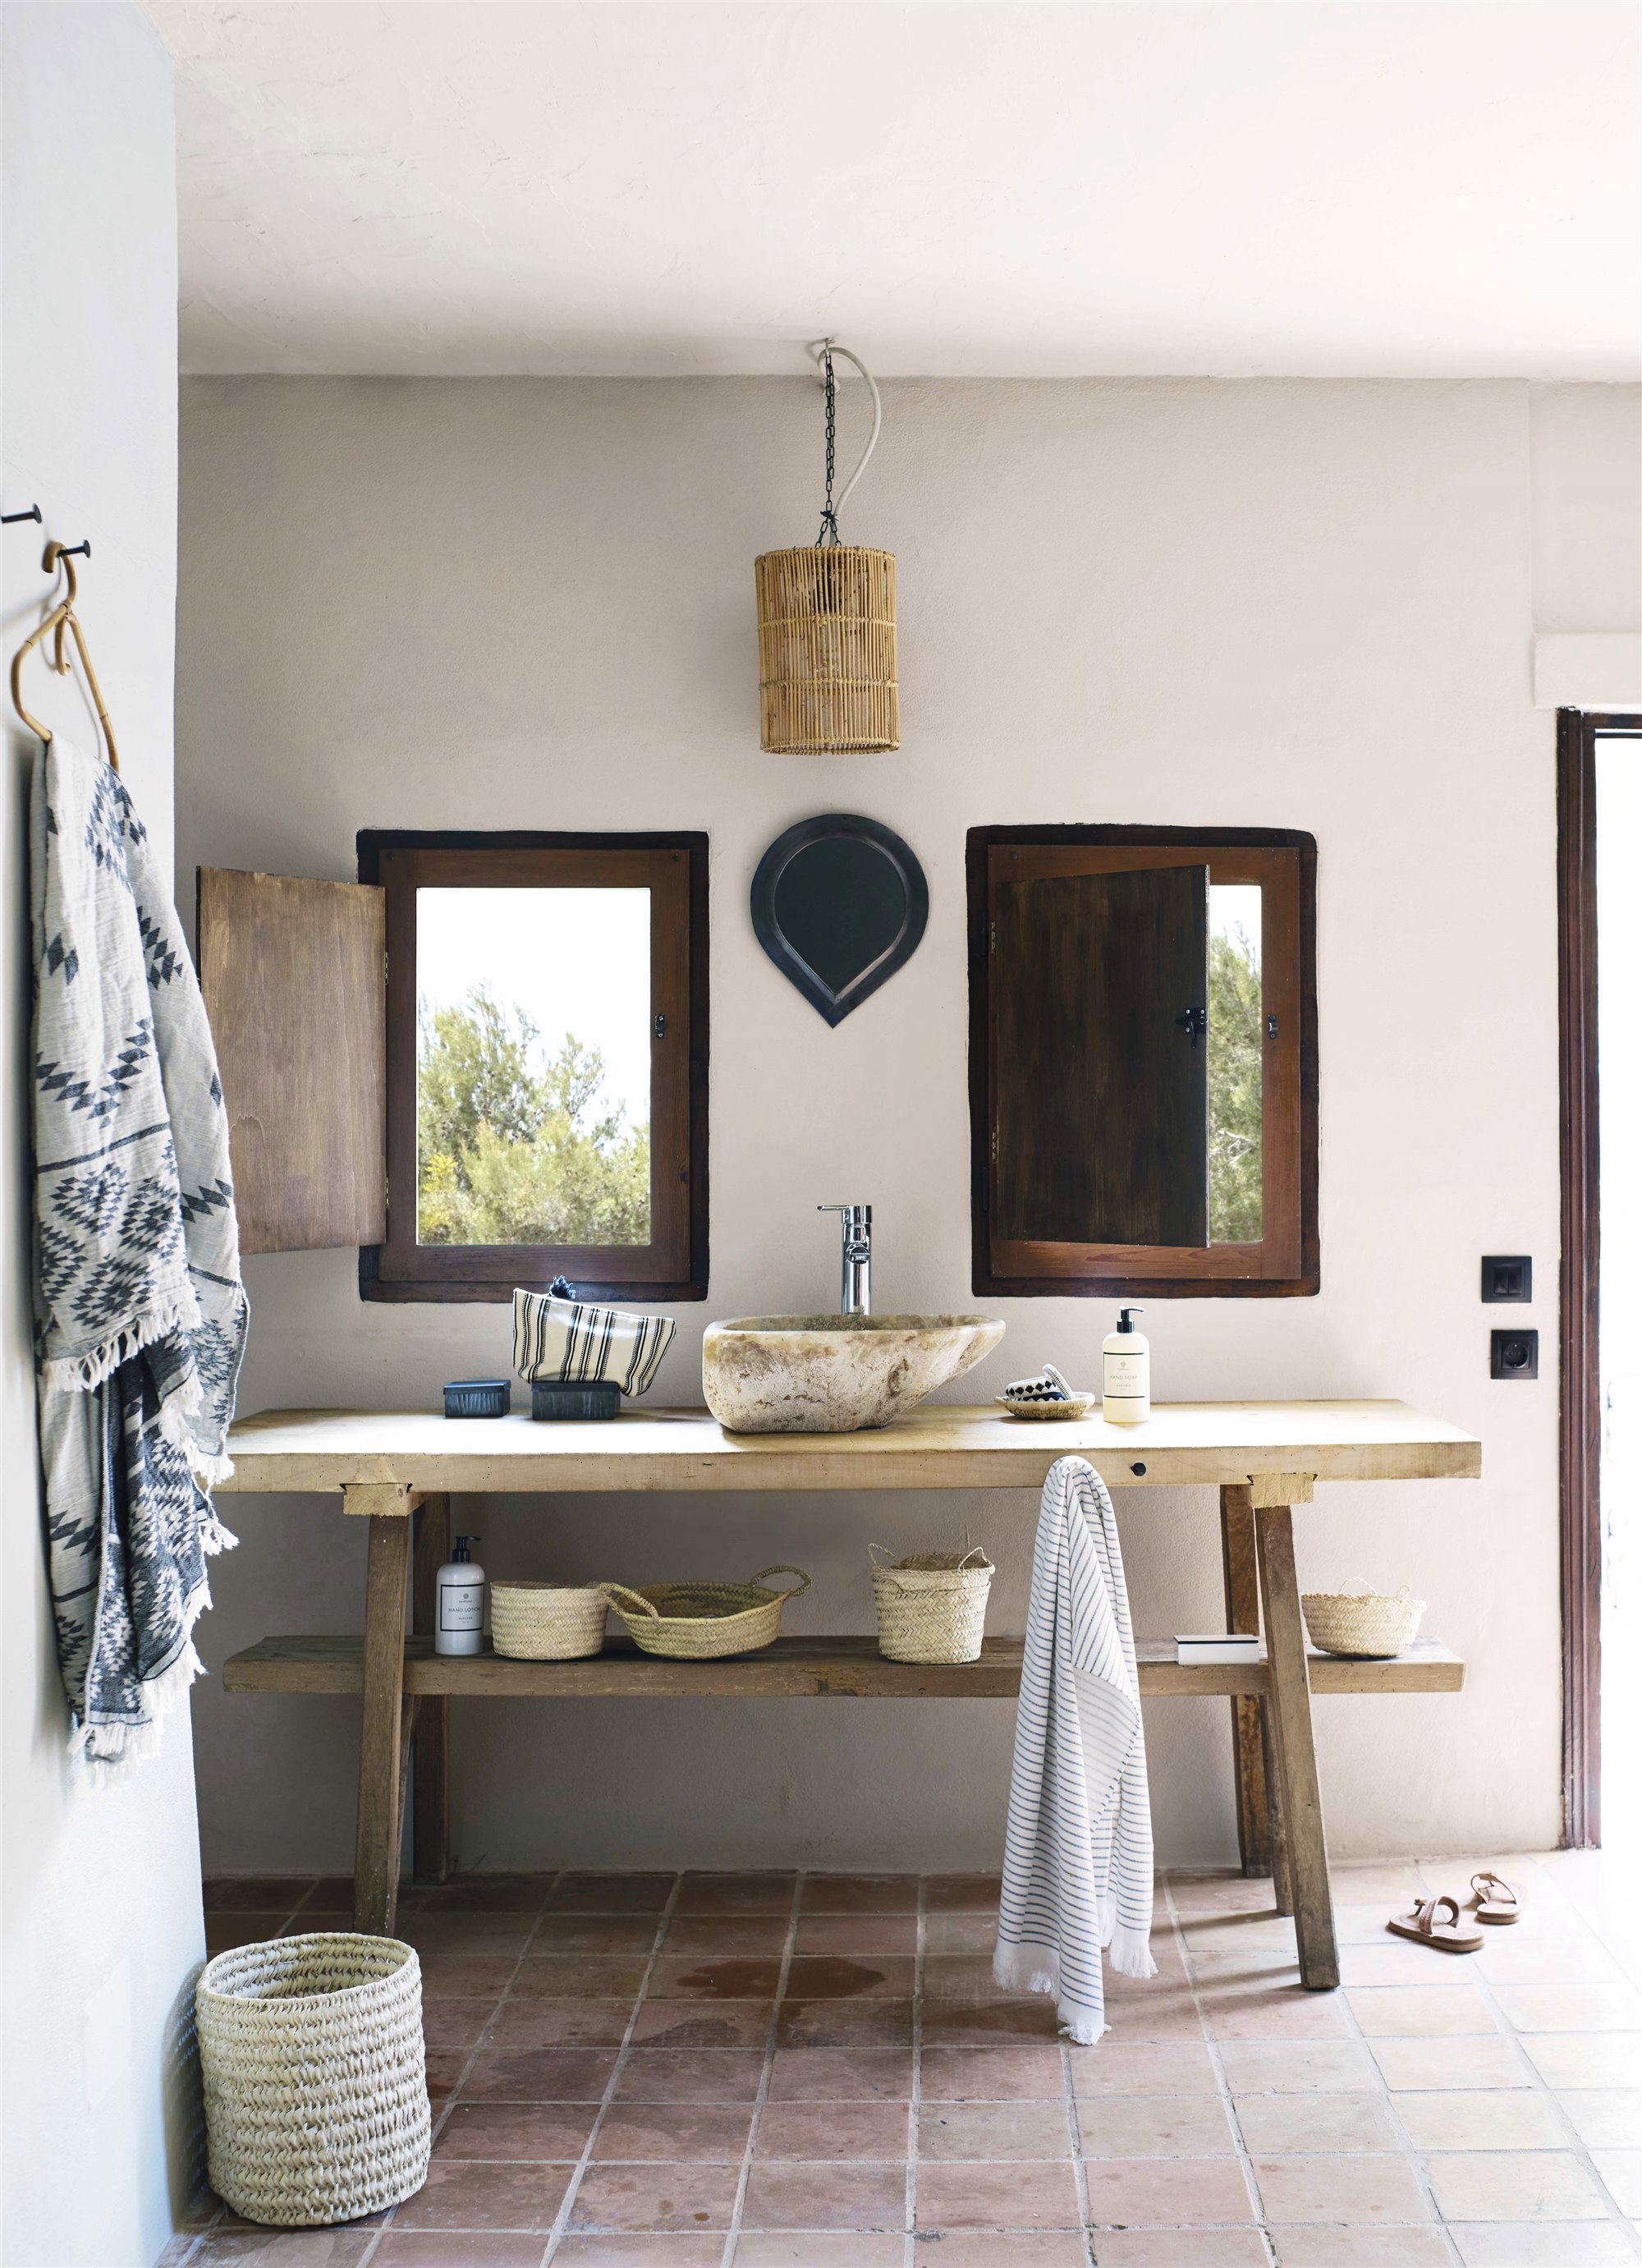 baño de estilo rústico con ventanas al exterior y lavabo de piedra